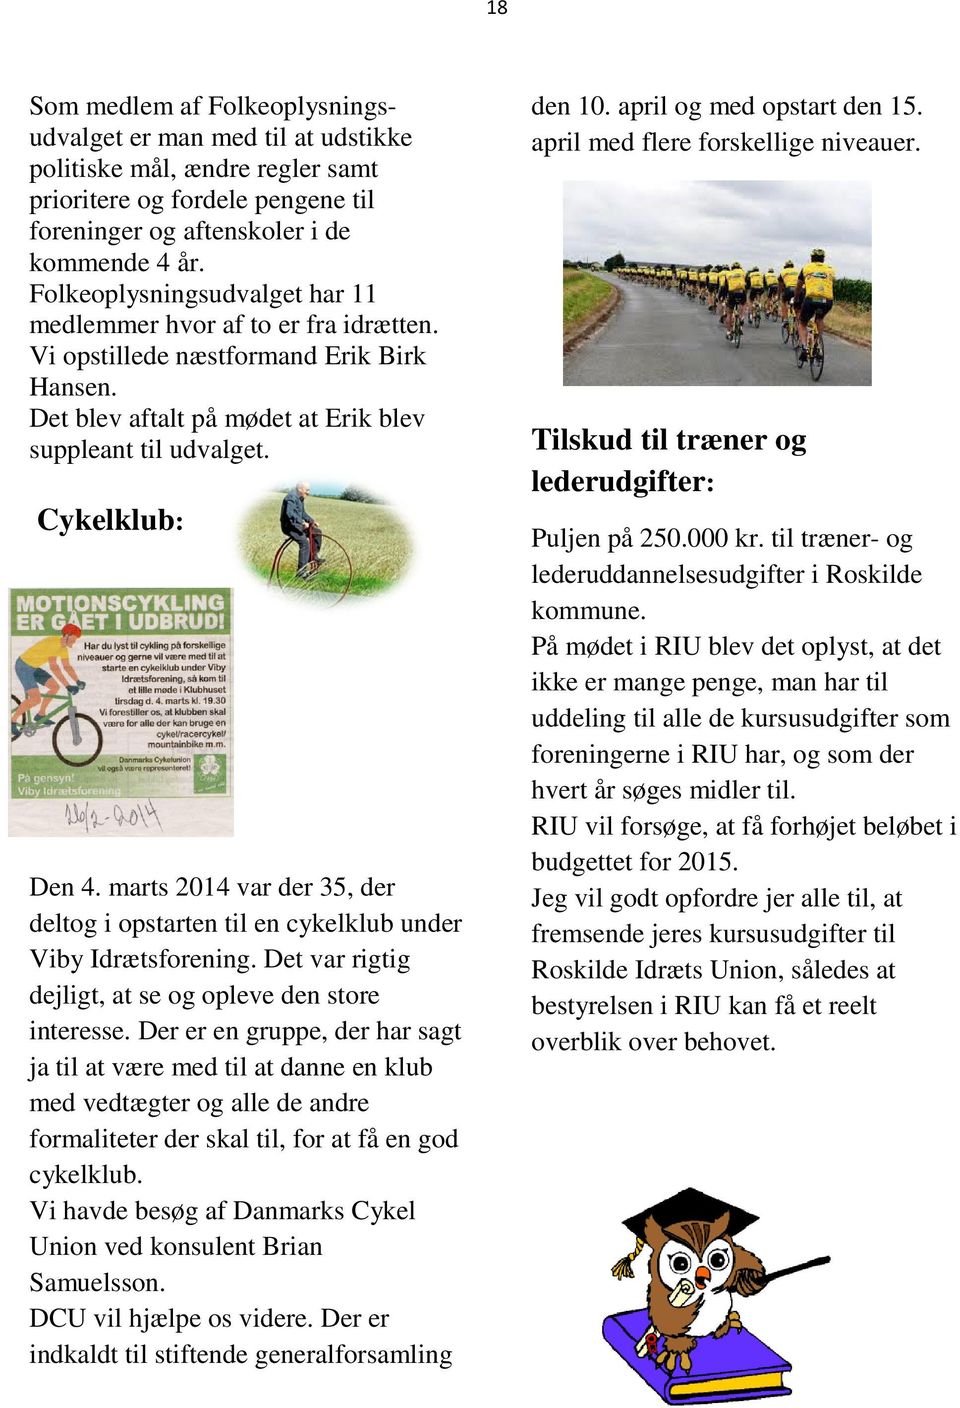 marts 2014 var der 35, der deltog i opstarten til en cykelklub under Viby Idrætsforening. Det var rigtig dejligt, at se og opleve den store interesse.